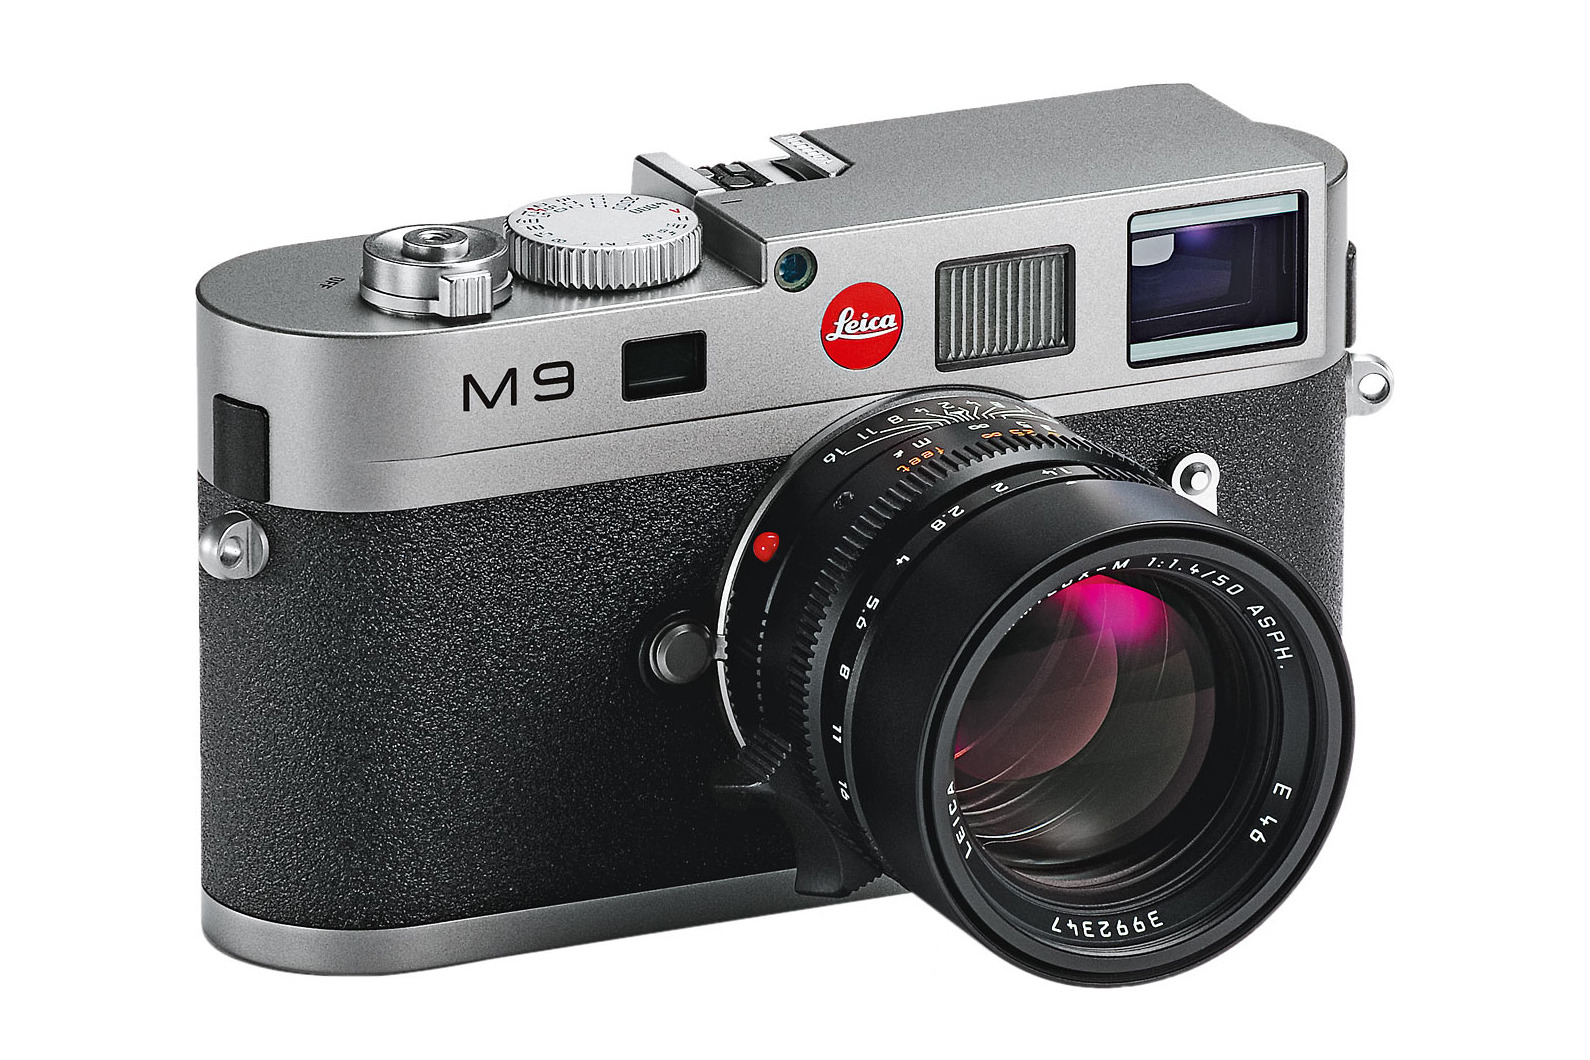 经典CCD旁轴相机 徕卡M9钢灰色限量热销